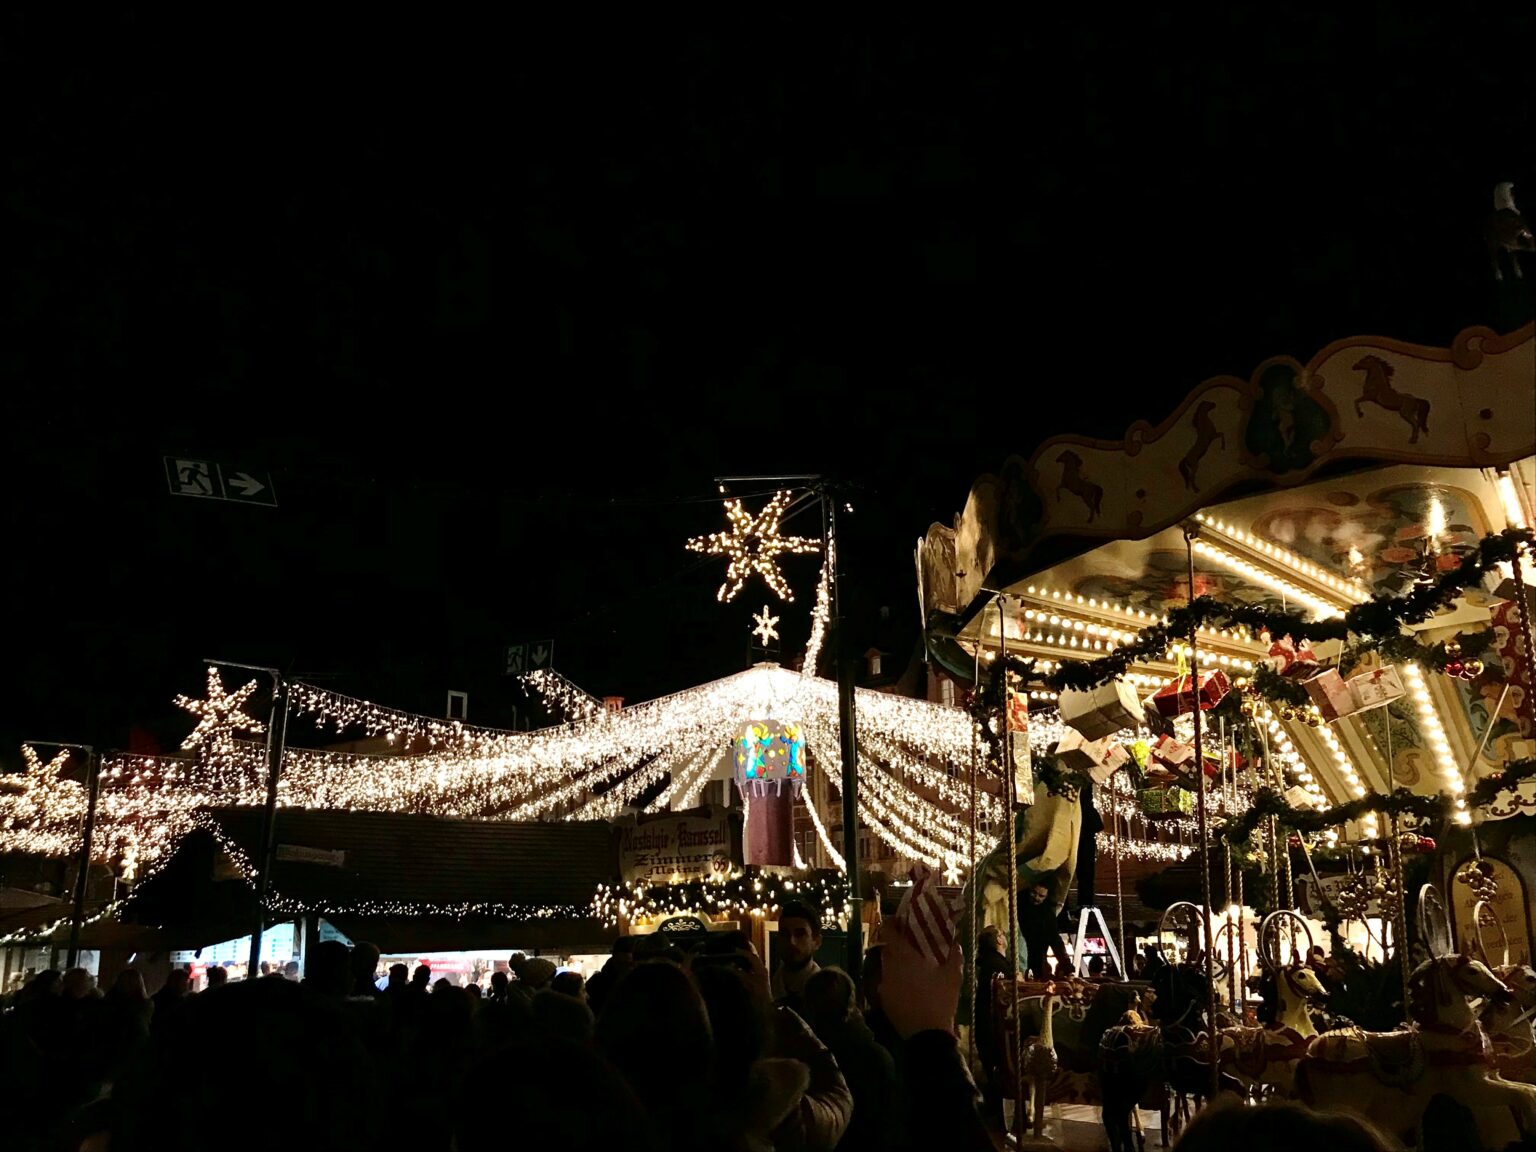 Weihnachtsmarkt Mainz